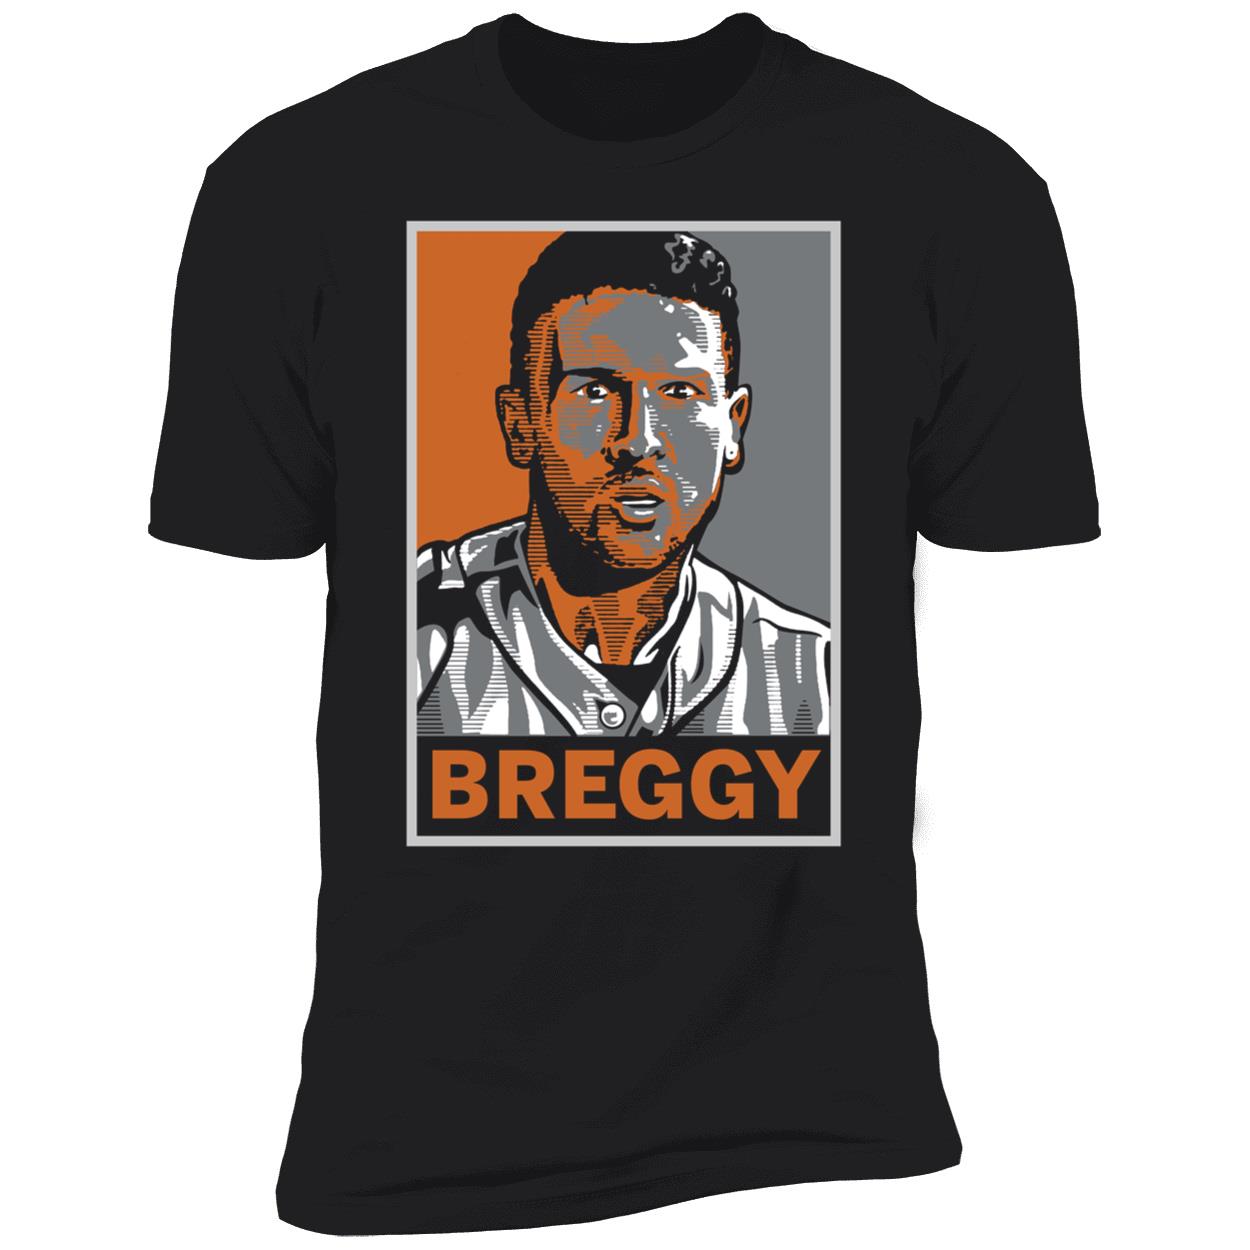 Alex Bregman: The breggy Stare, Adult T-Shirt / Extra Large - MLB - Sports Fan Gear | breakingt